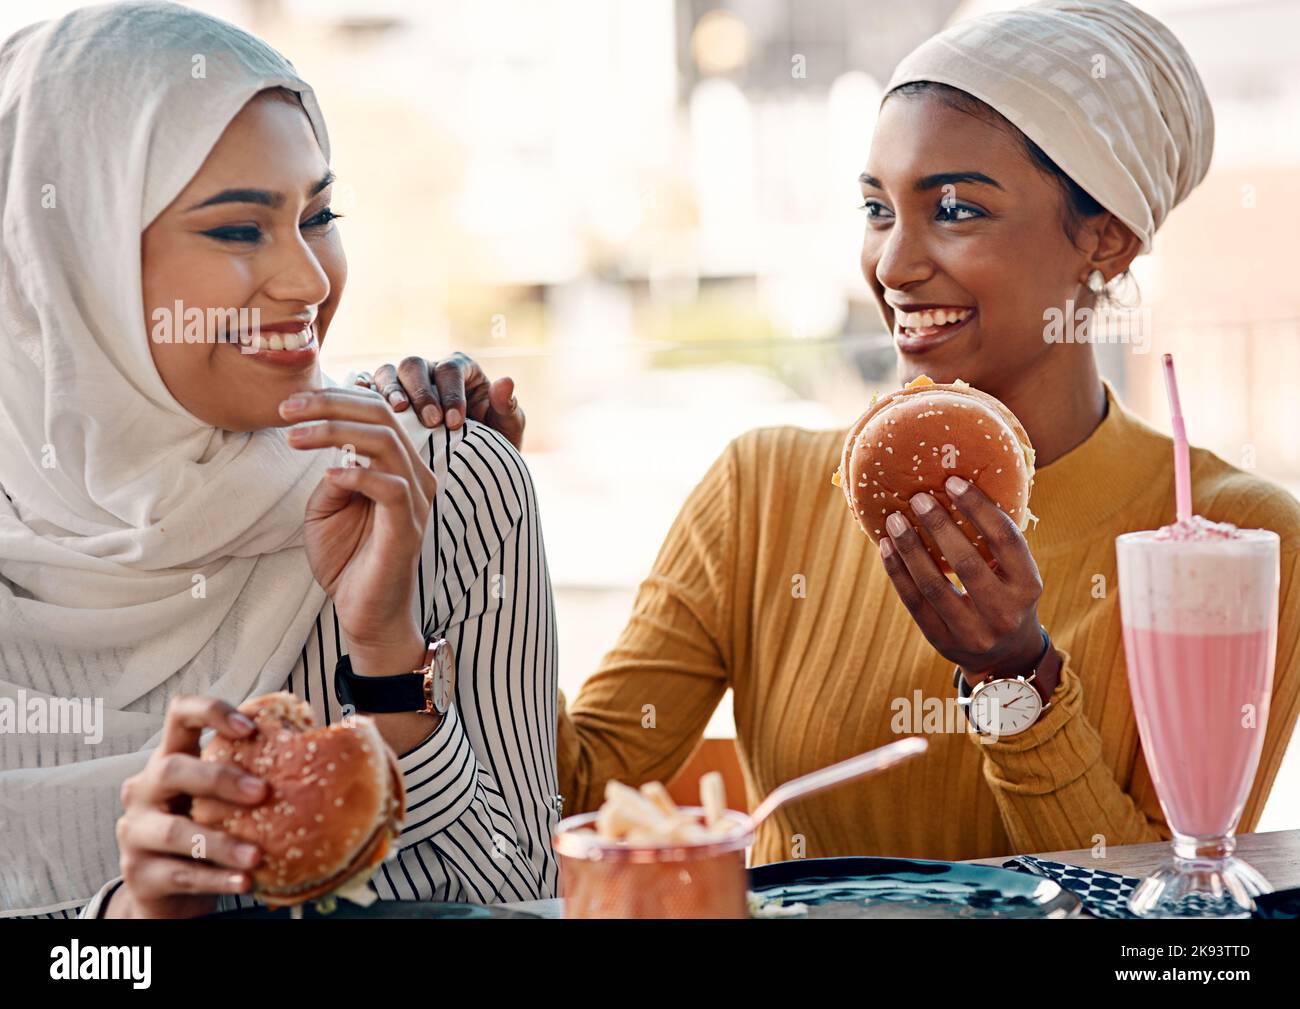 Les gourmets savent comment se rendre heureux. Deux jeunes amies affectueuses mangeant des hamburgers dans un café tout en étant vêtues de hijab. Banque D'Images